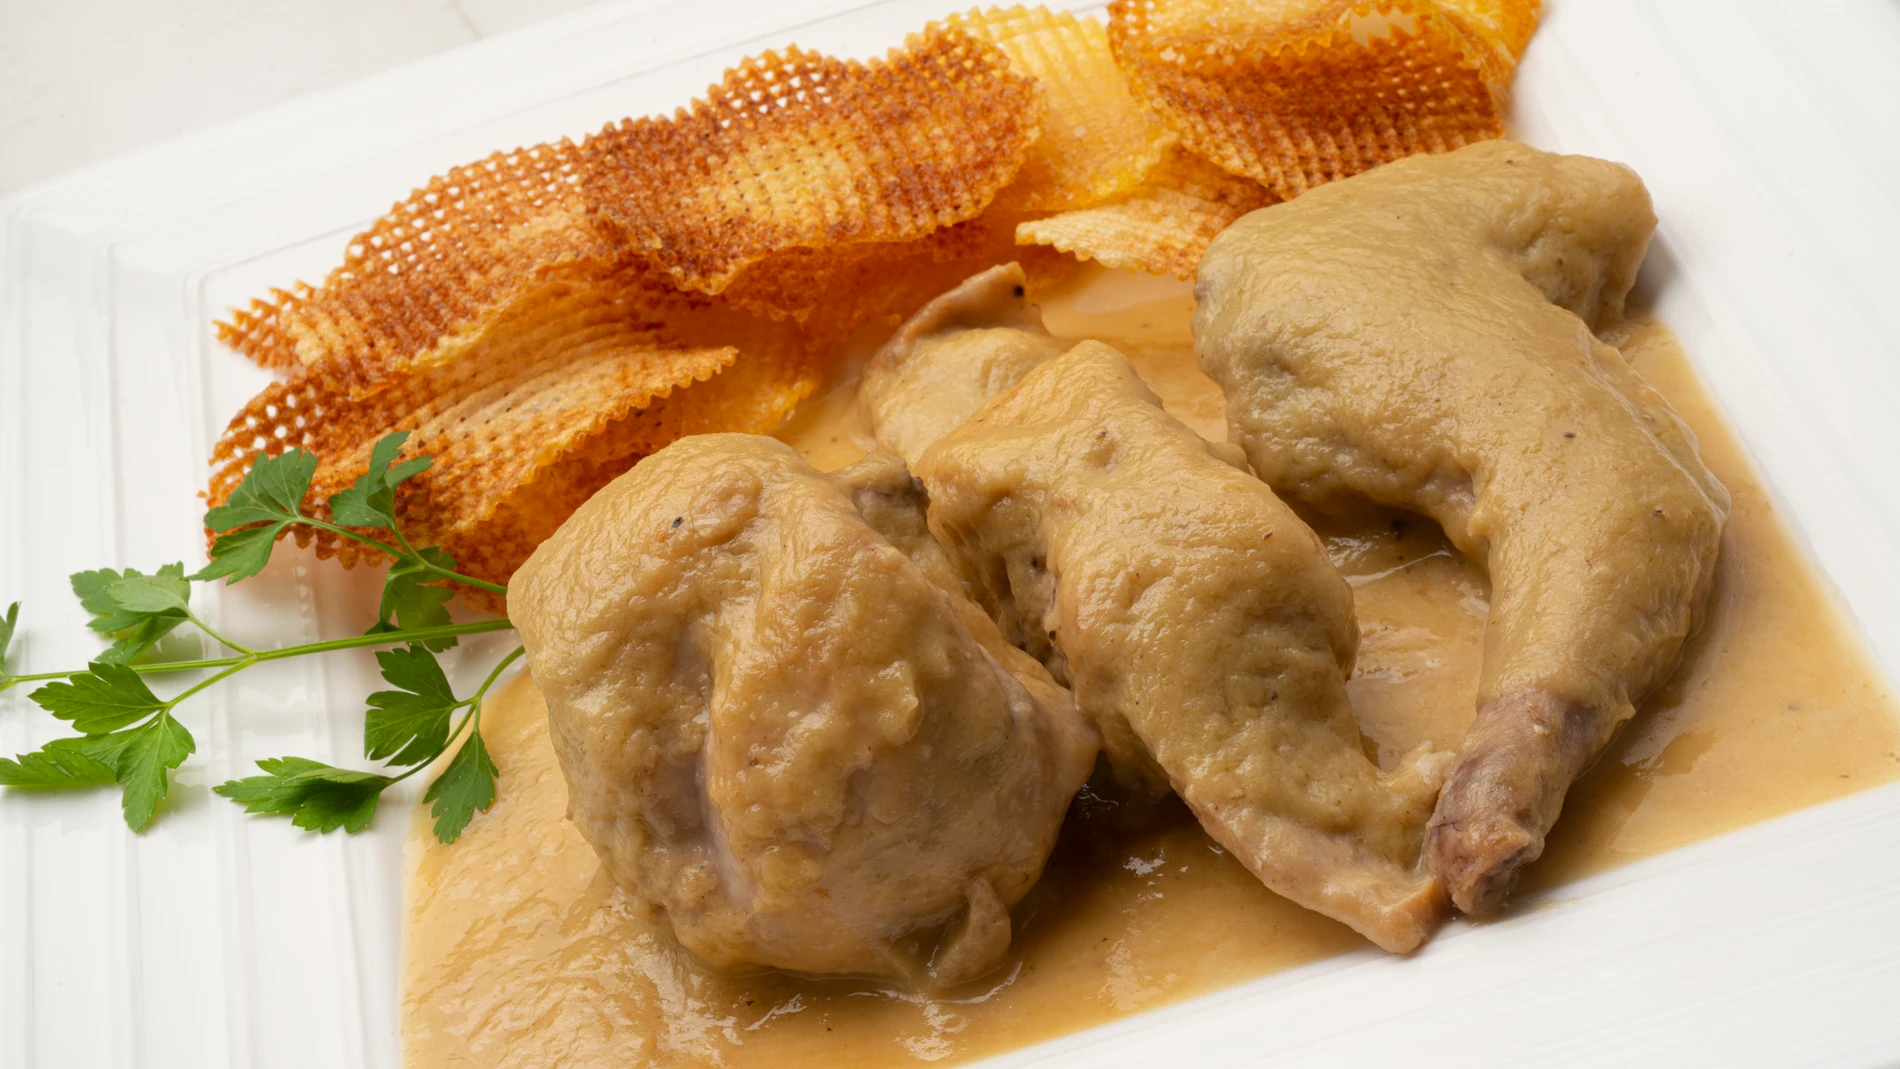 Cocina abierta de Karlos Arguiñano: Carne de conejo en salsa de pera  